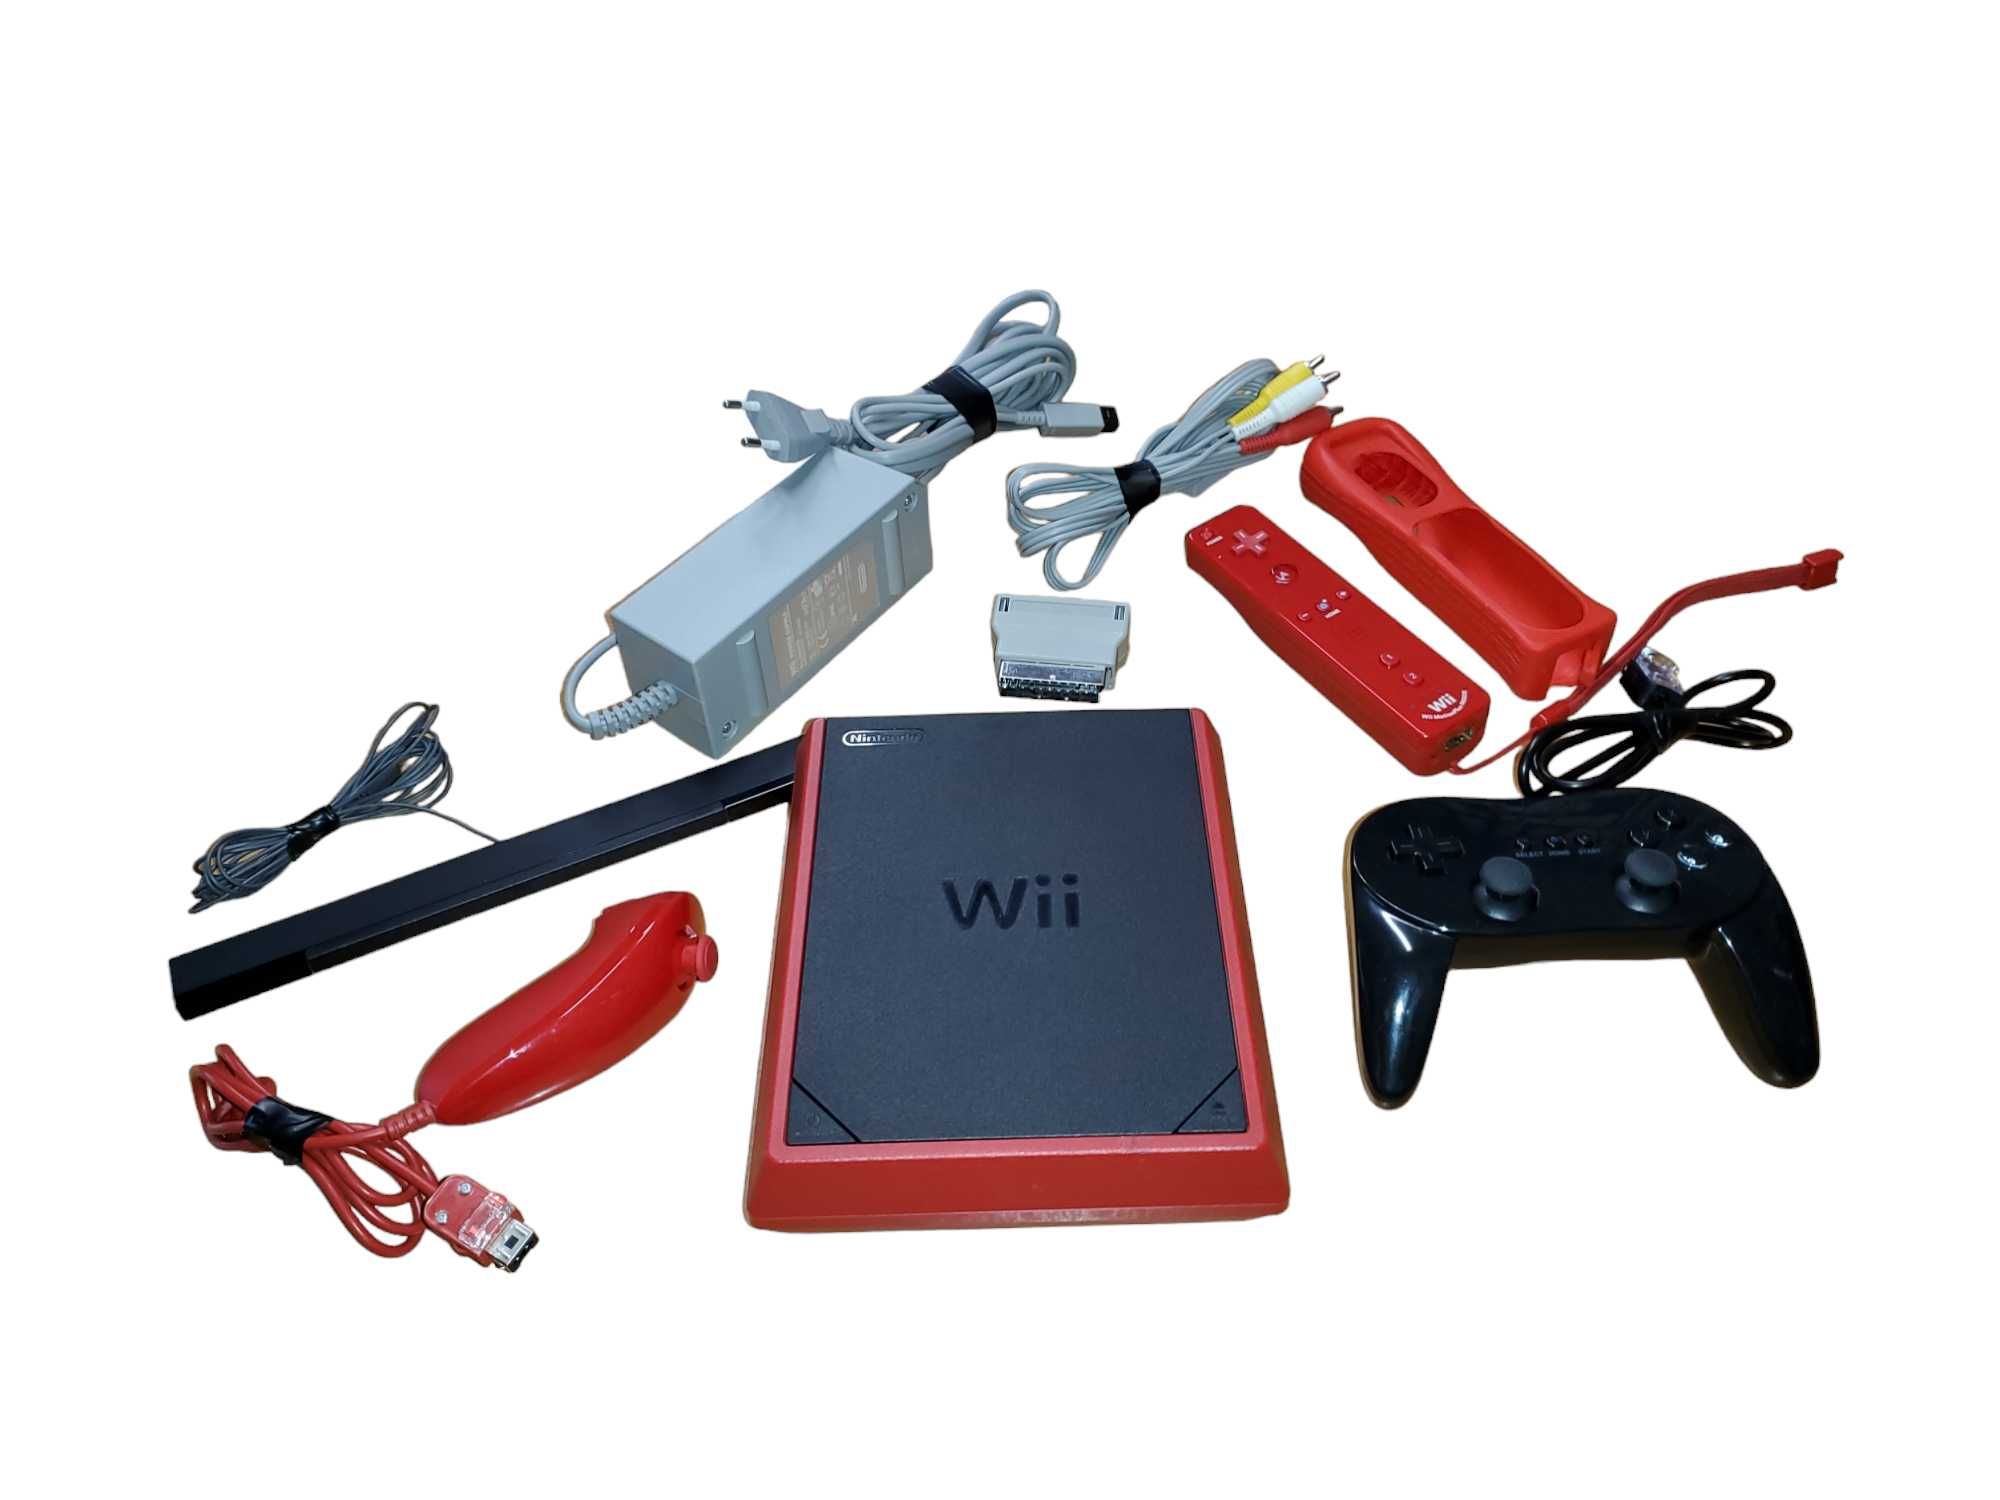 Konsola Wii mini RVL-201 EUR